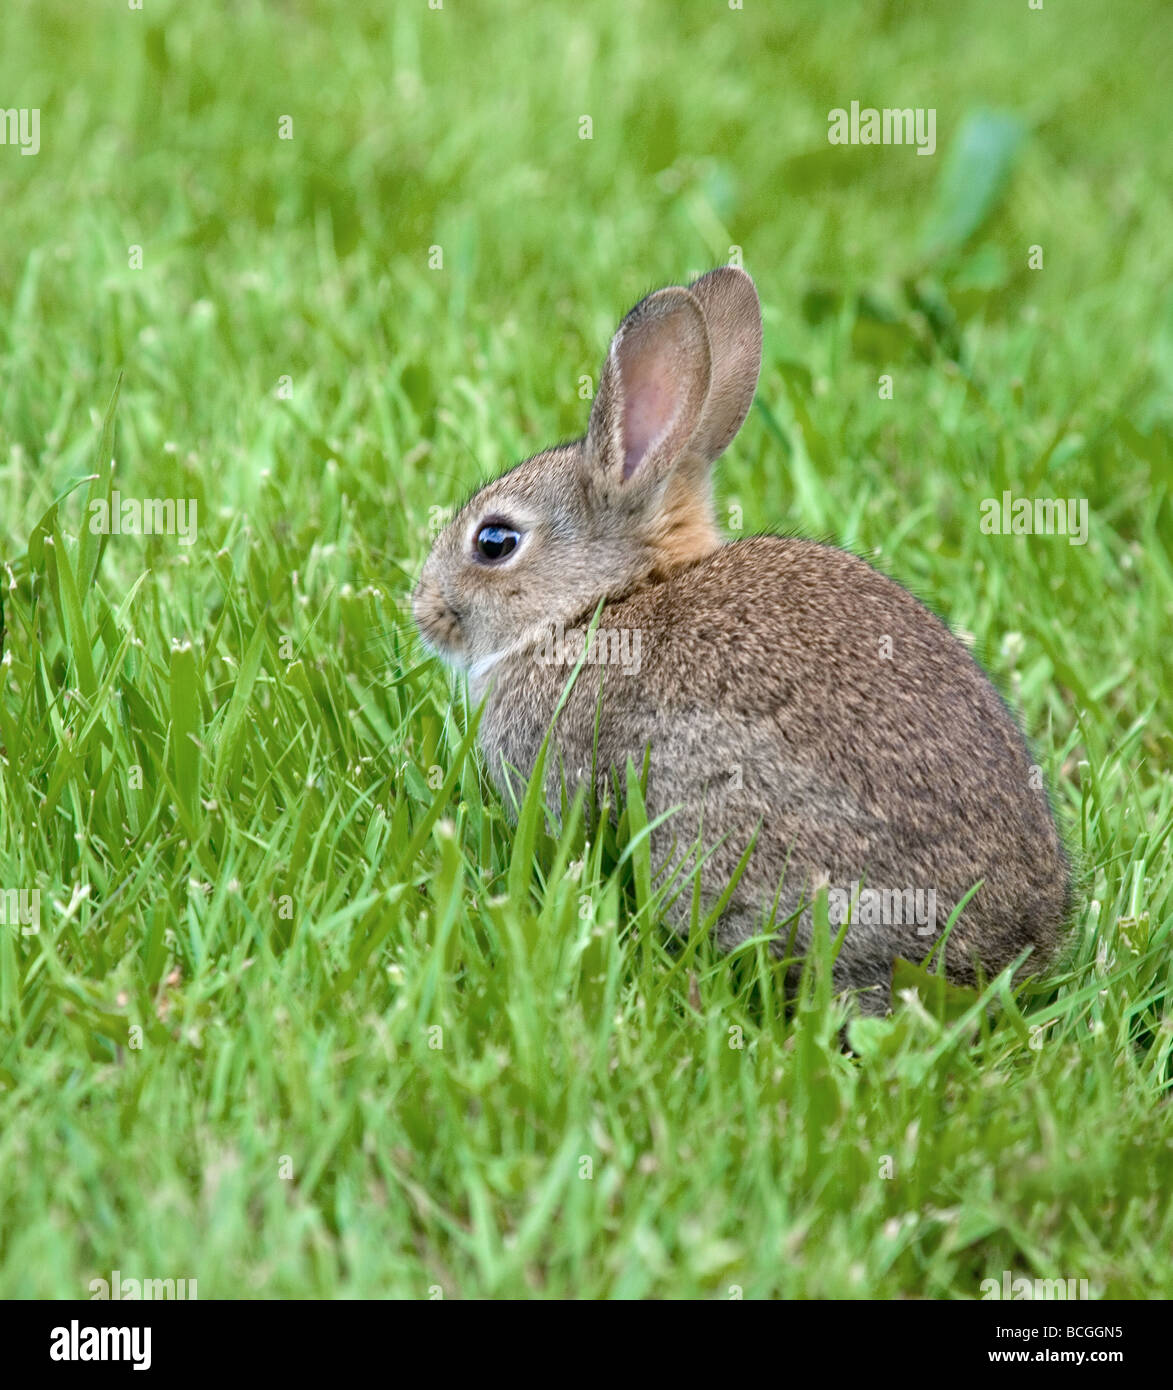 Jeune lapin européen Oryctolagus cuniculus se nourrissant d'herbe de printemps Banque D'Images